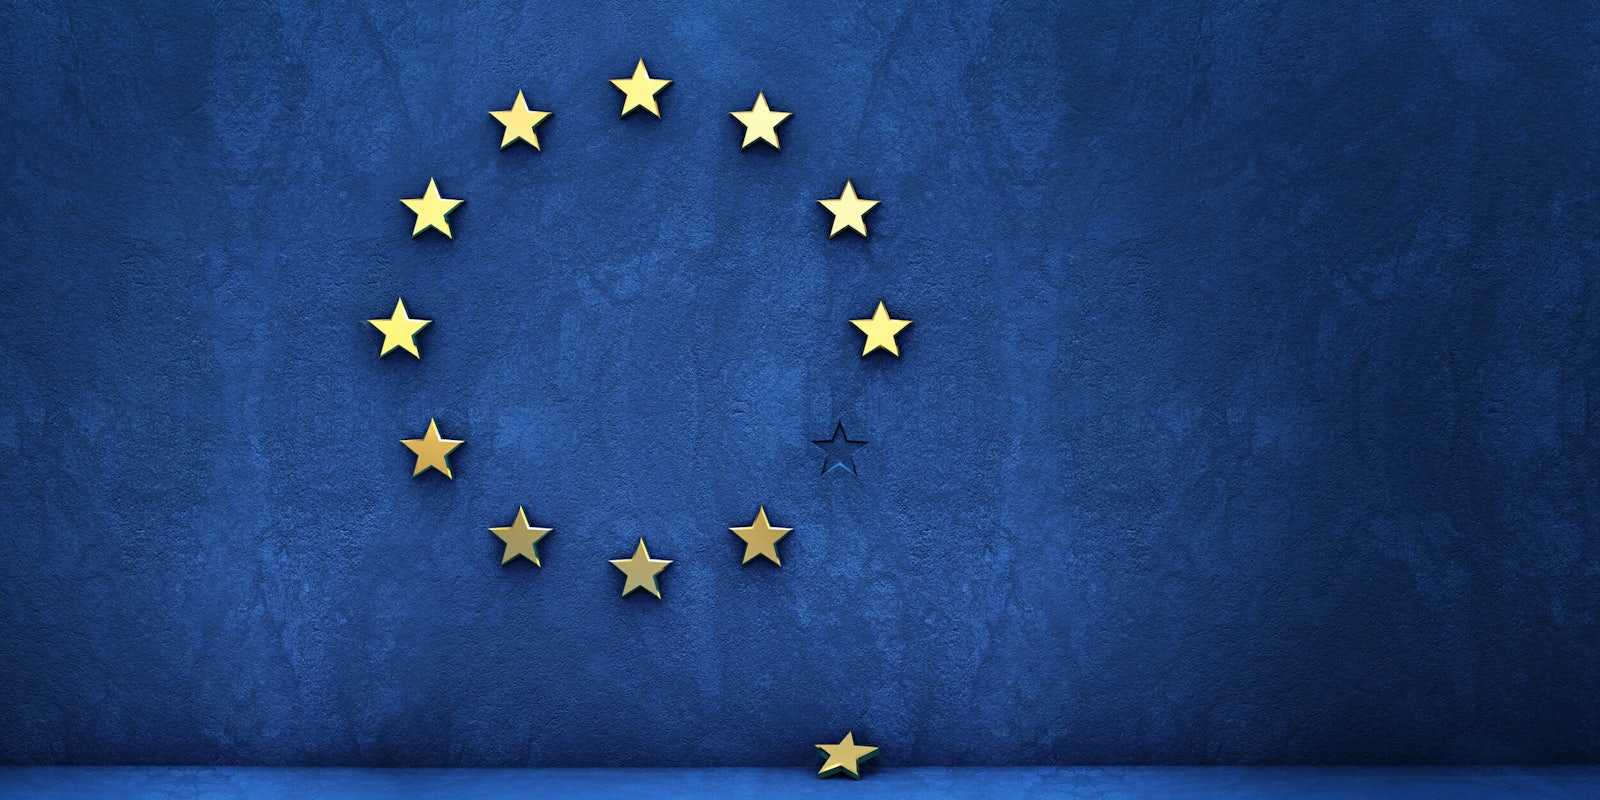 Gold star fallen out of EU logo